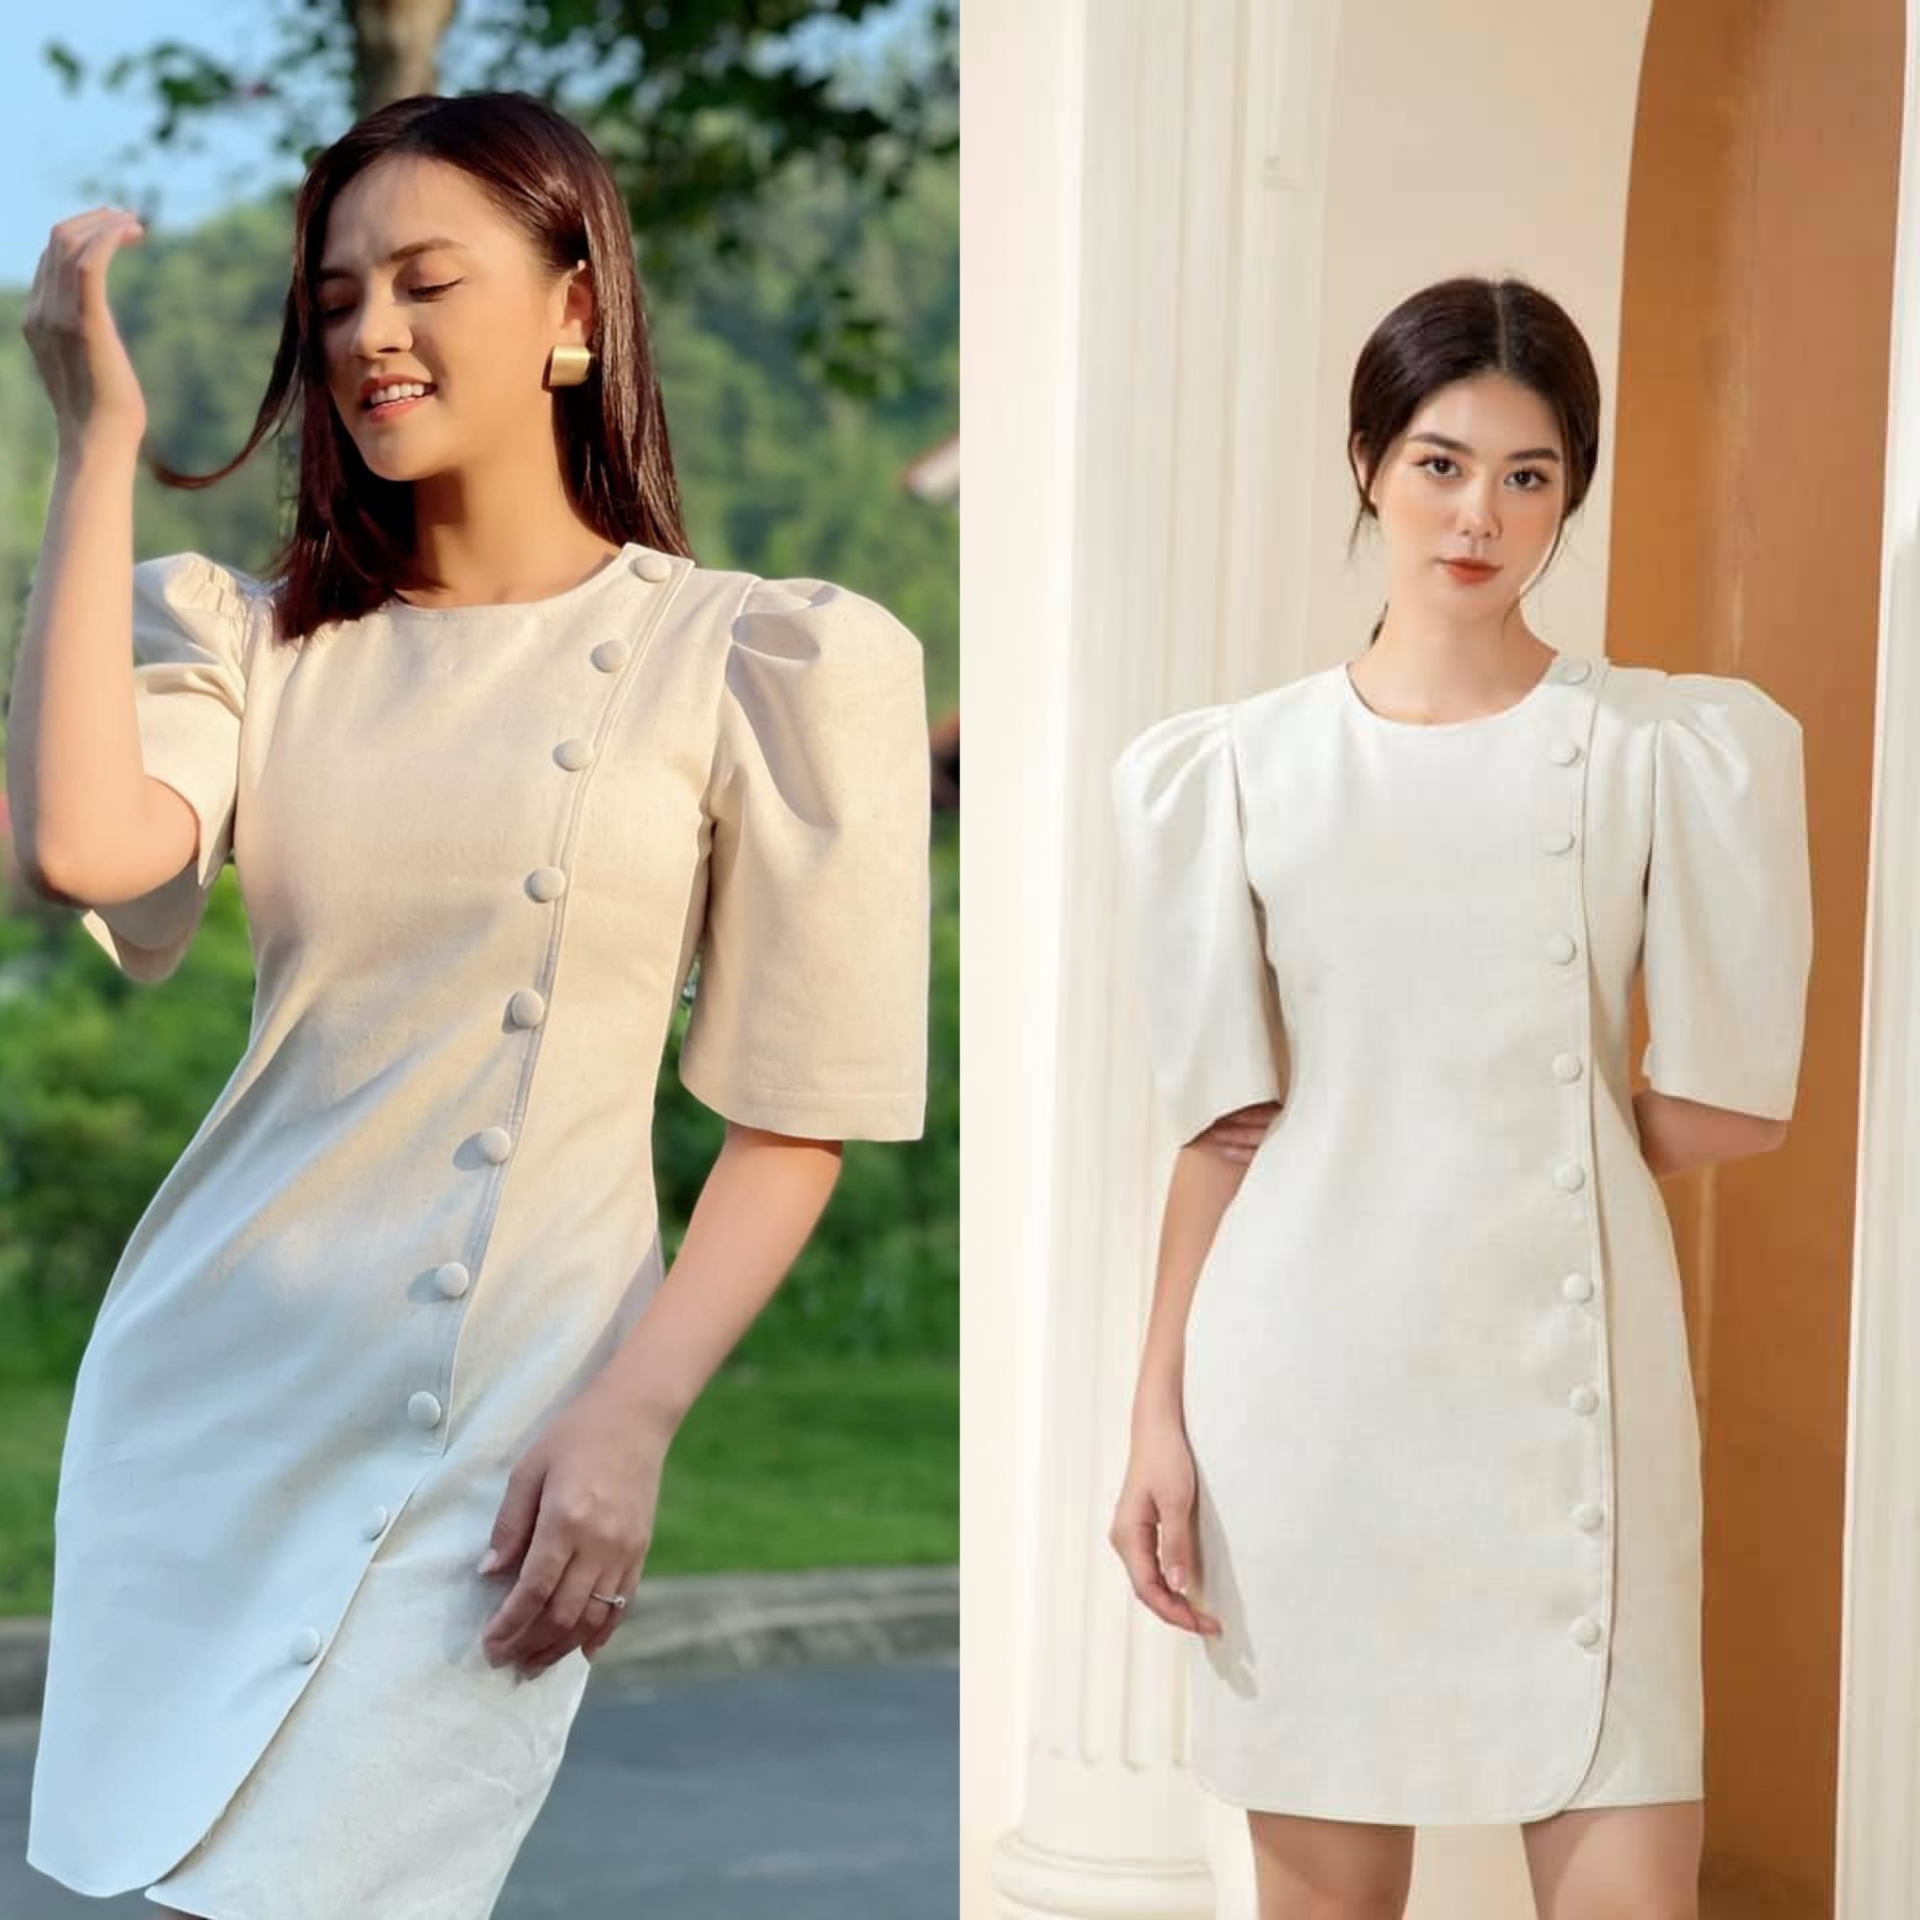 Chiếc váy trắng sang chảnh với phần tay bồng lạ mắt này là một thiết kế của thương hiệu Huyen Chau Nguyen có giá 2,4 triệu đồng. Khi diện lên người Khánh Thy, khán giả còn cho rằng cô nàng trông tinh tế và sang trọng hơn cả người mẫu.